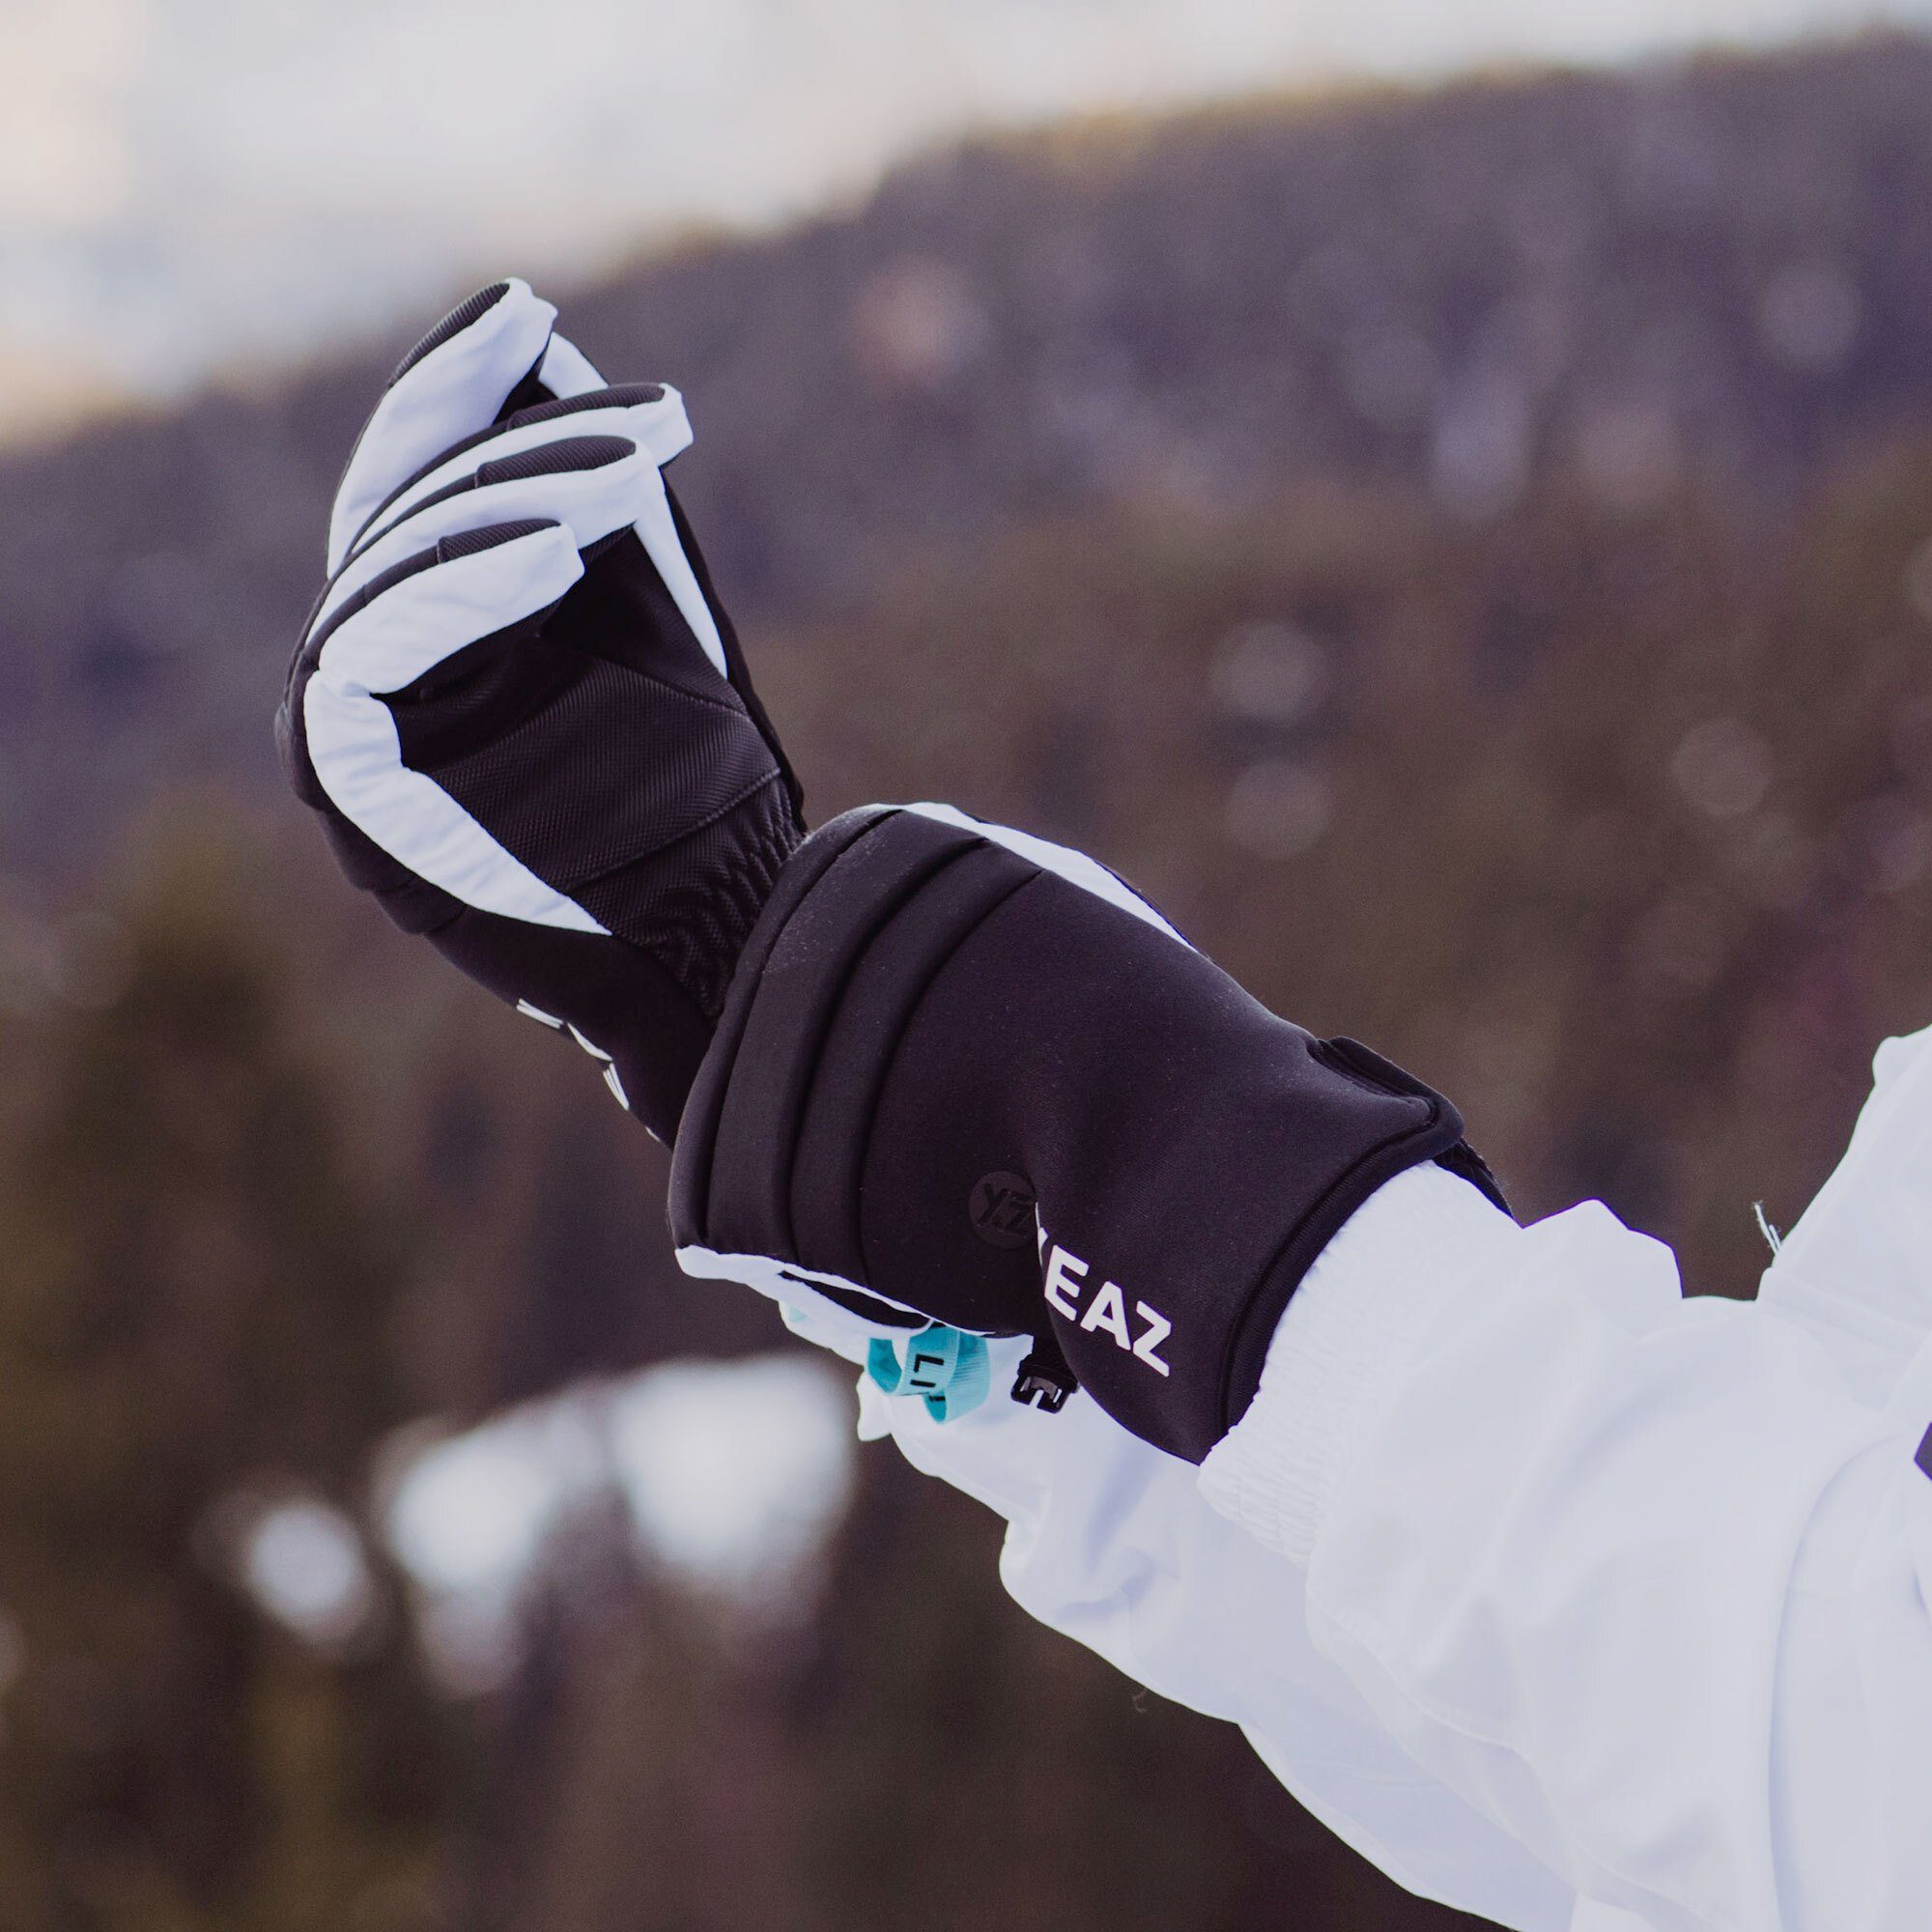 YEAZ Skihandschuhe RIDIN skihandschuhe für Touch-Funktion Devices Smart